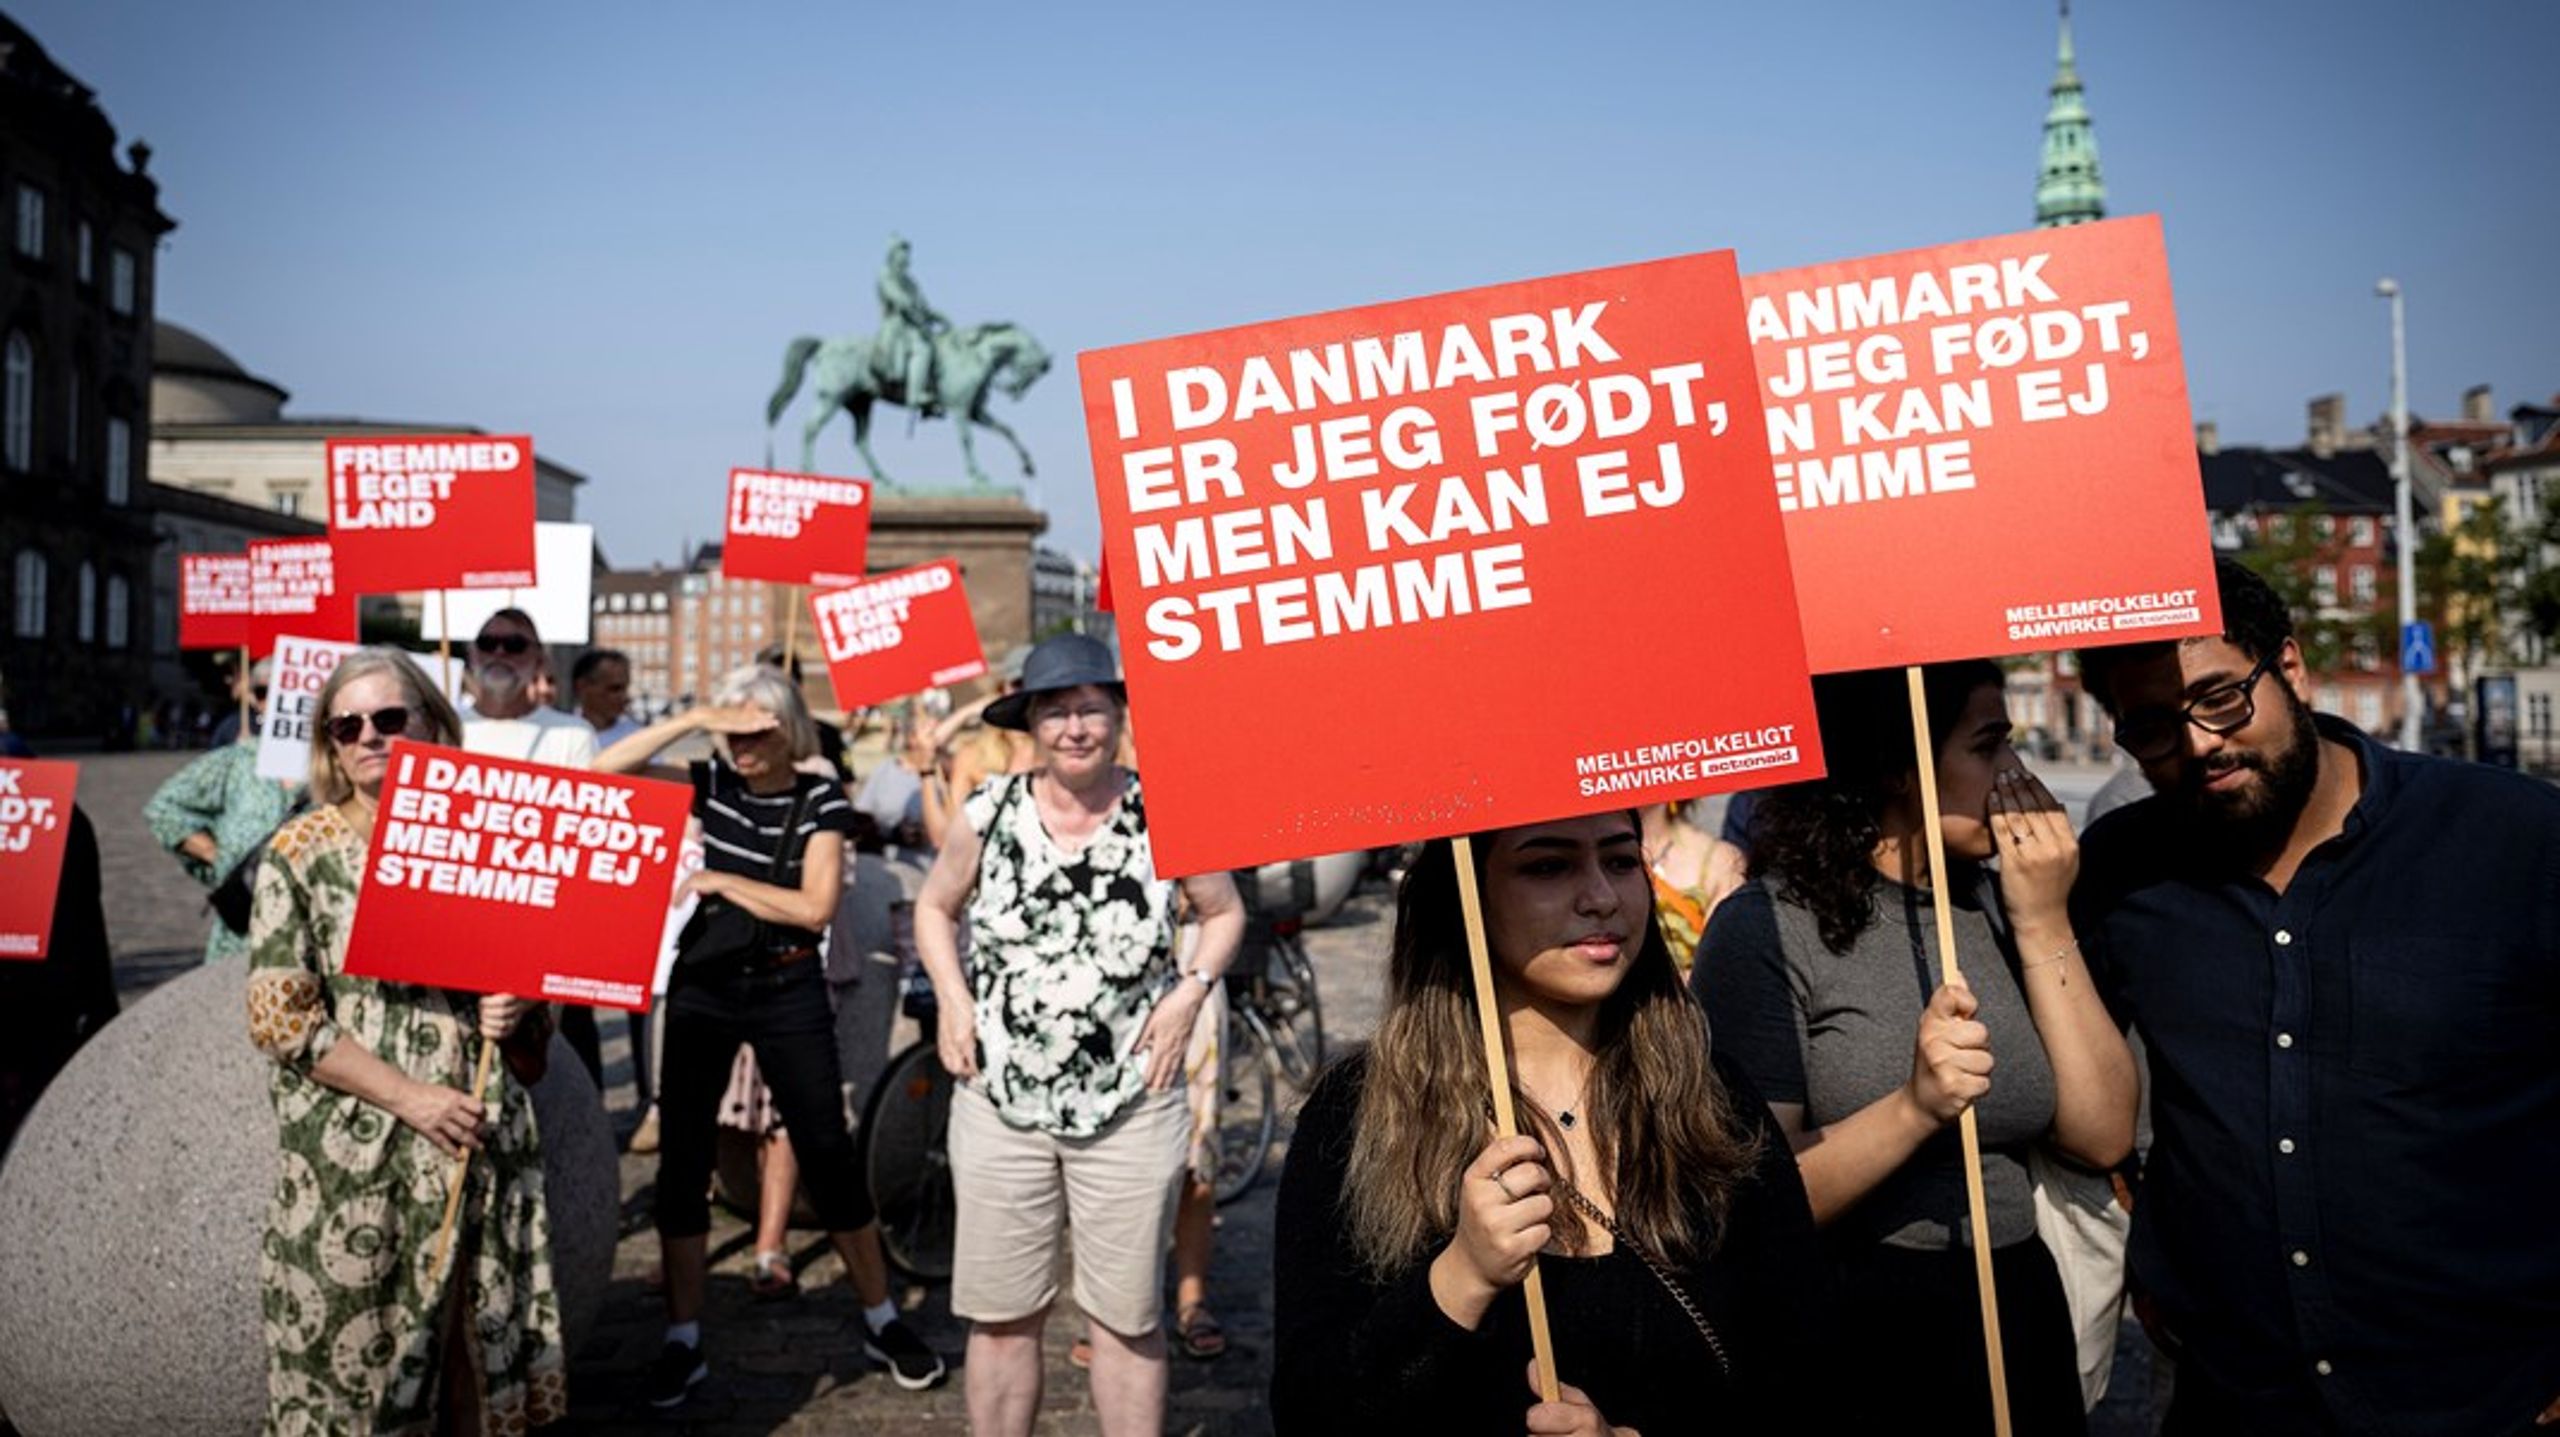 Ikke alle demonstrationer ændrer holdninger på Christiansborg.
Men nogle er med til at ændre Danmarkshistorien, og det er jeg er faktisk meget
godt tilfreds med, at Mellemfolkeligt Samvirke kan bidrage til, skriver Sara
Katrine Brandt.